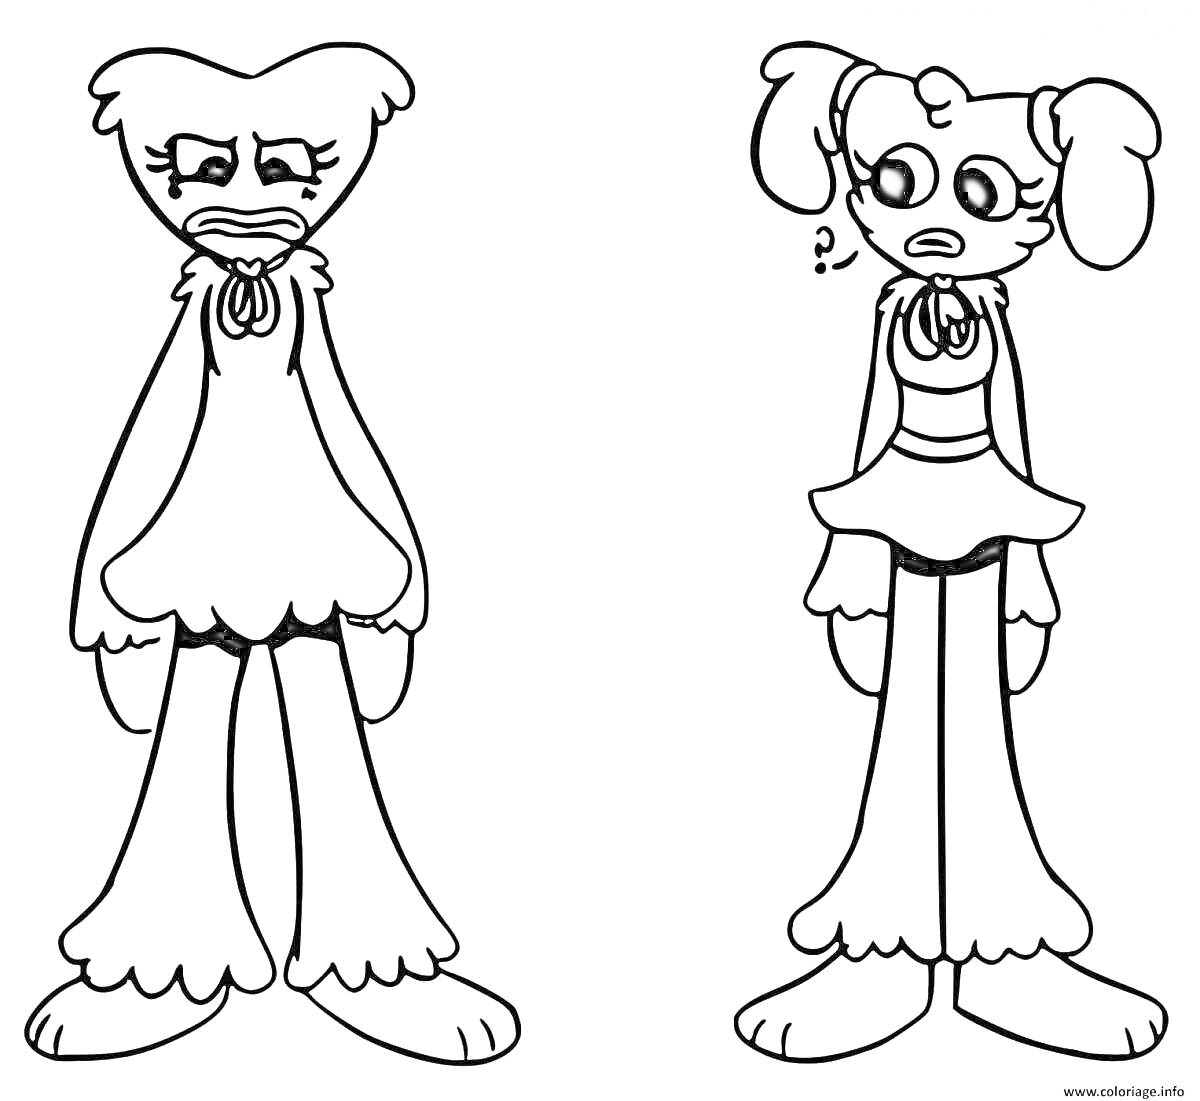 Раскраска Два персонажа кисси мисси с бантиками, один из которых смотрит вперед, а другой в сторону